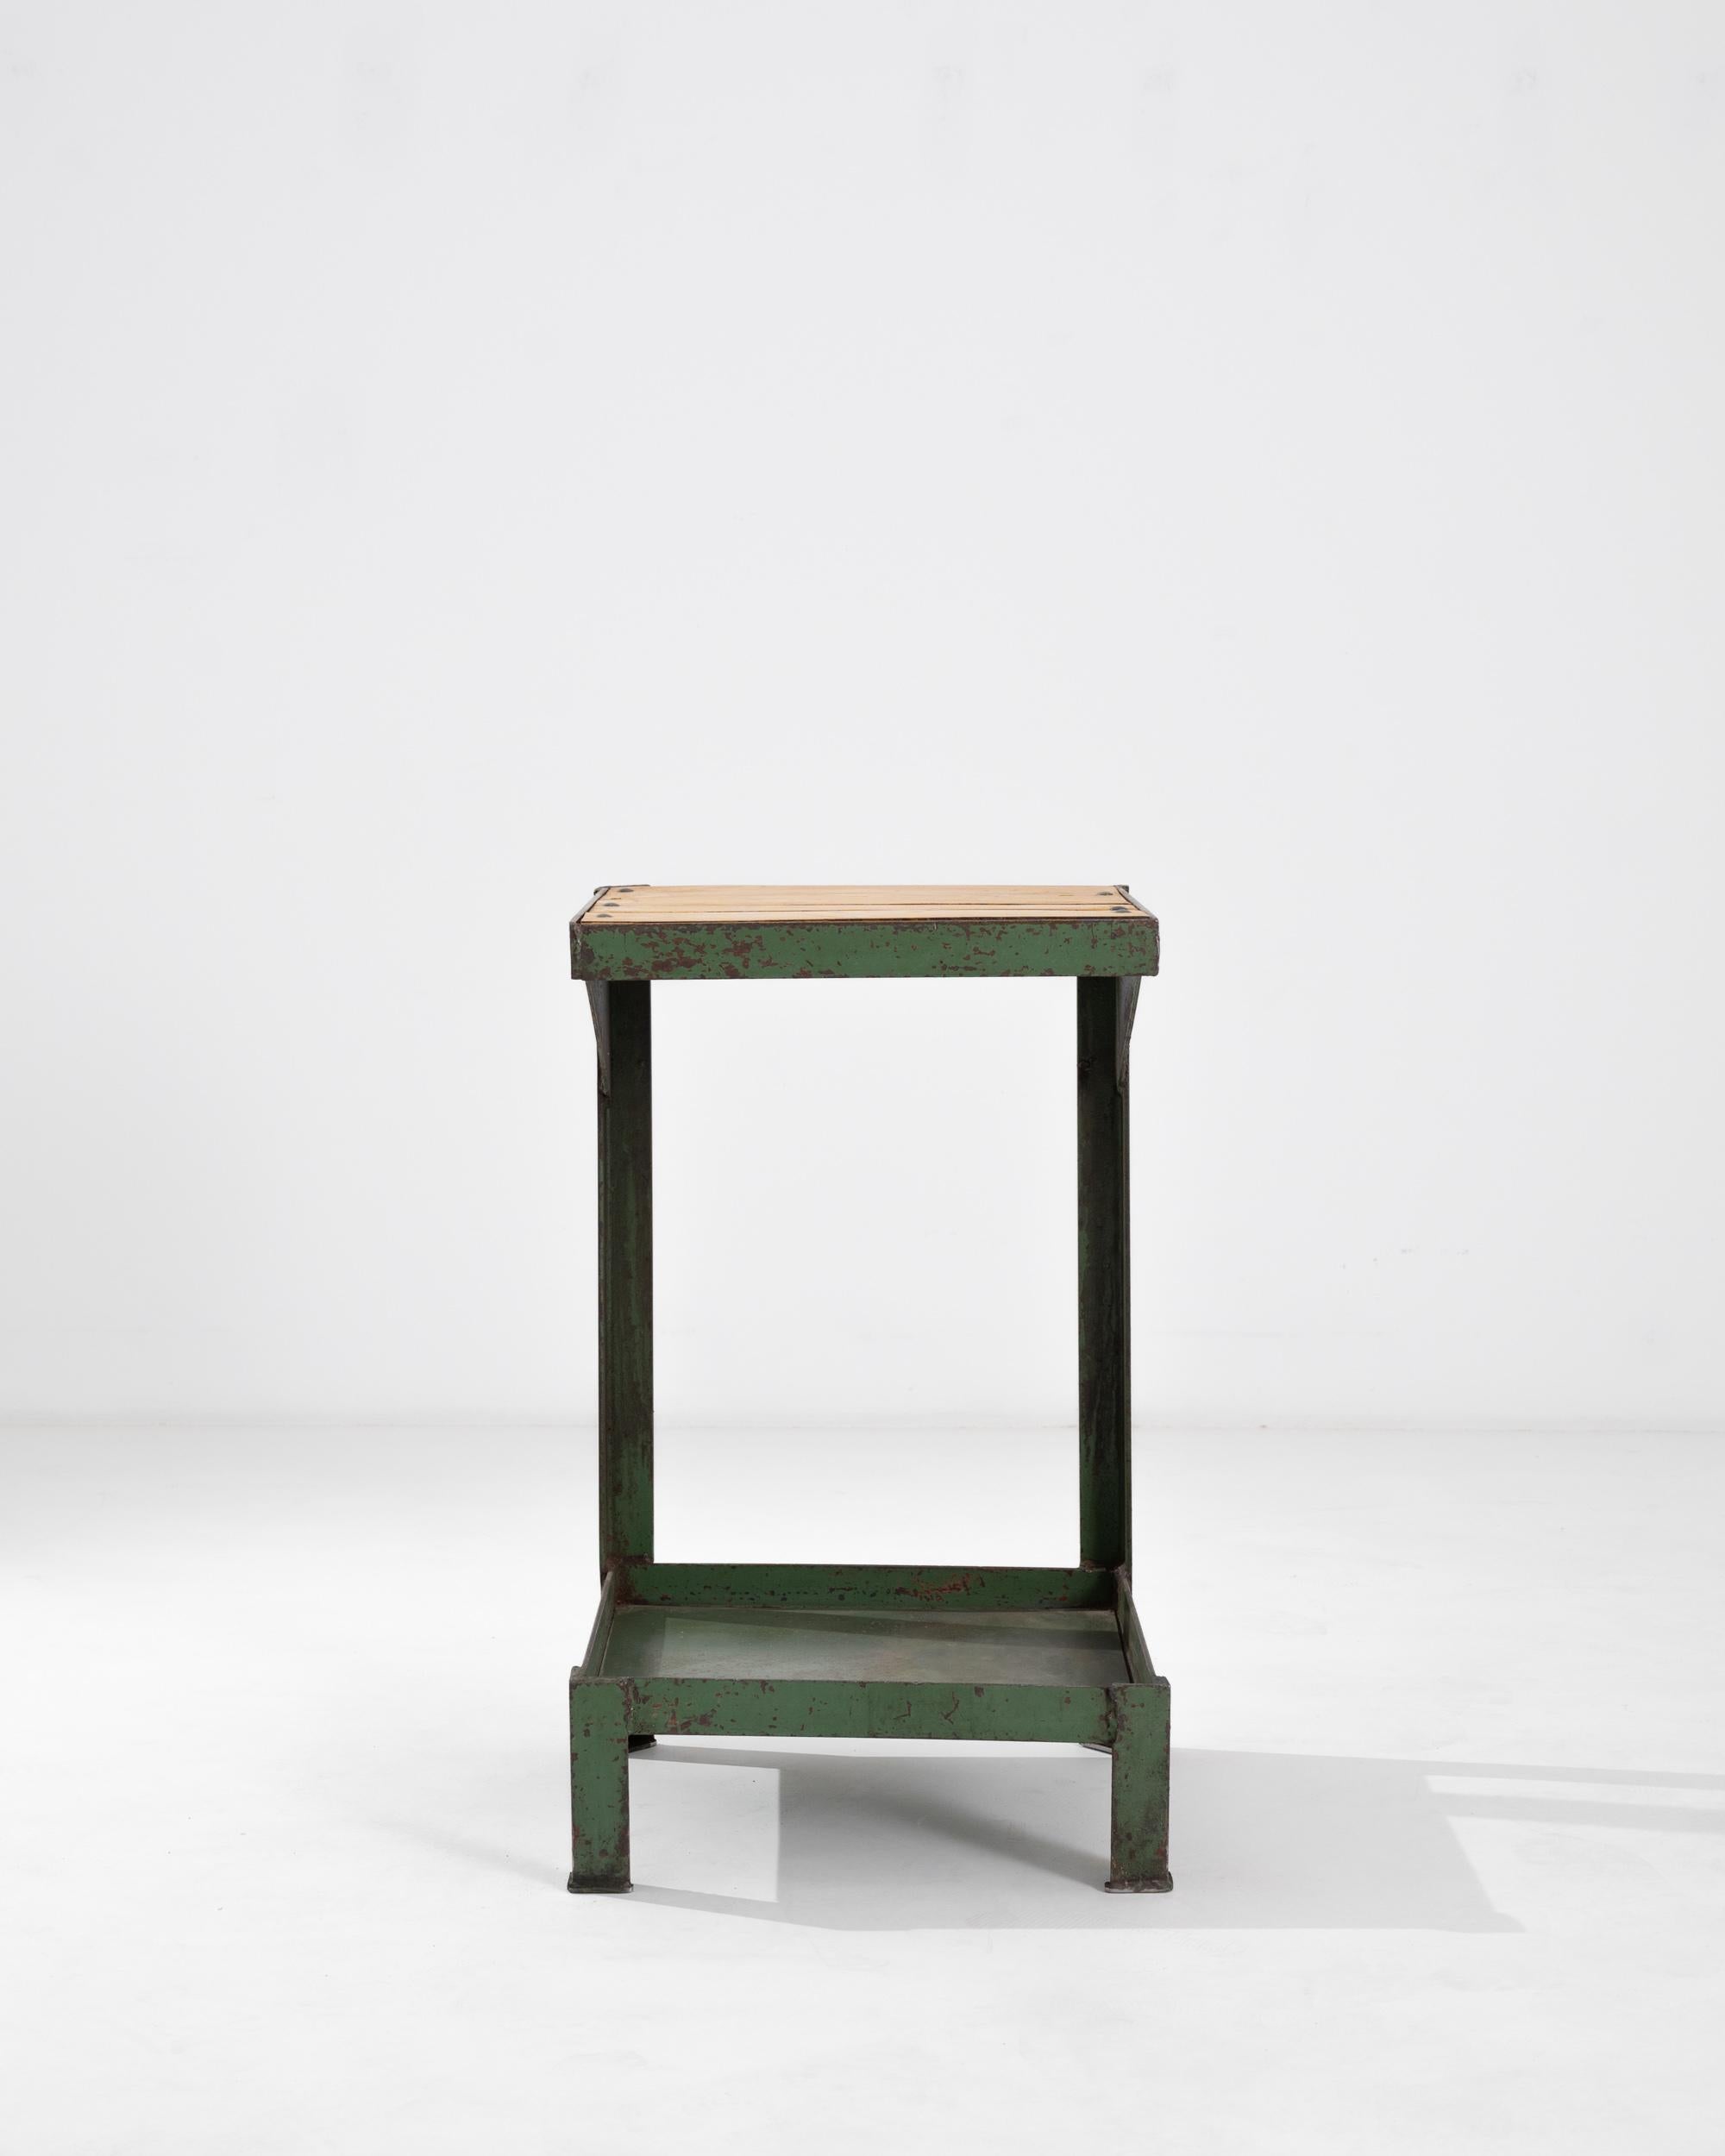 Dieser Vintage-Tisch setzt einen auffälligen Industrial-Akzent. Die im 20. Jahrhundert in Europa hergestellte Form ist streng architektonisch: Stahlträger stützen ein Paar Plattformen, die mit Metallbändern eingefasst sind. Quadratische Beine